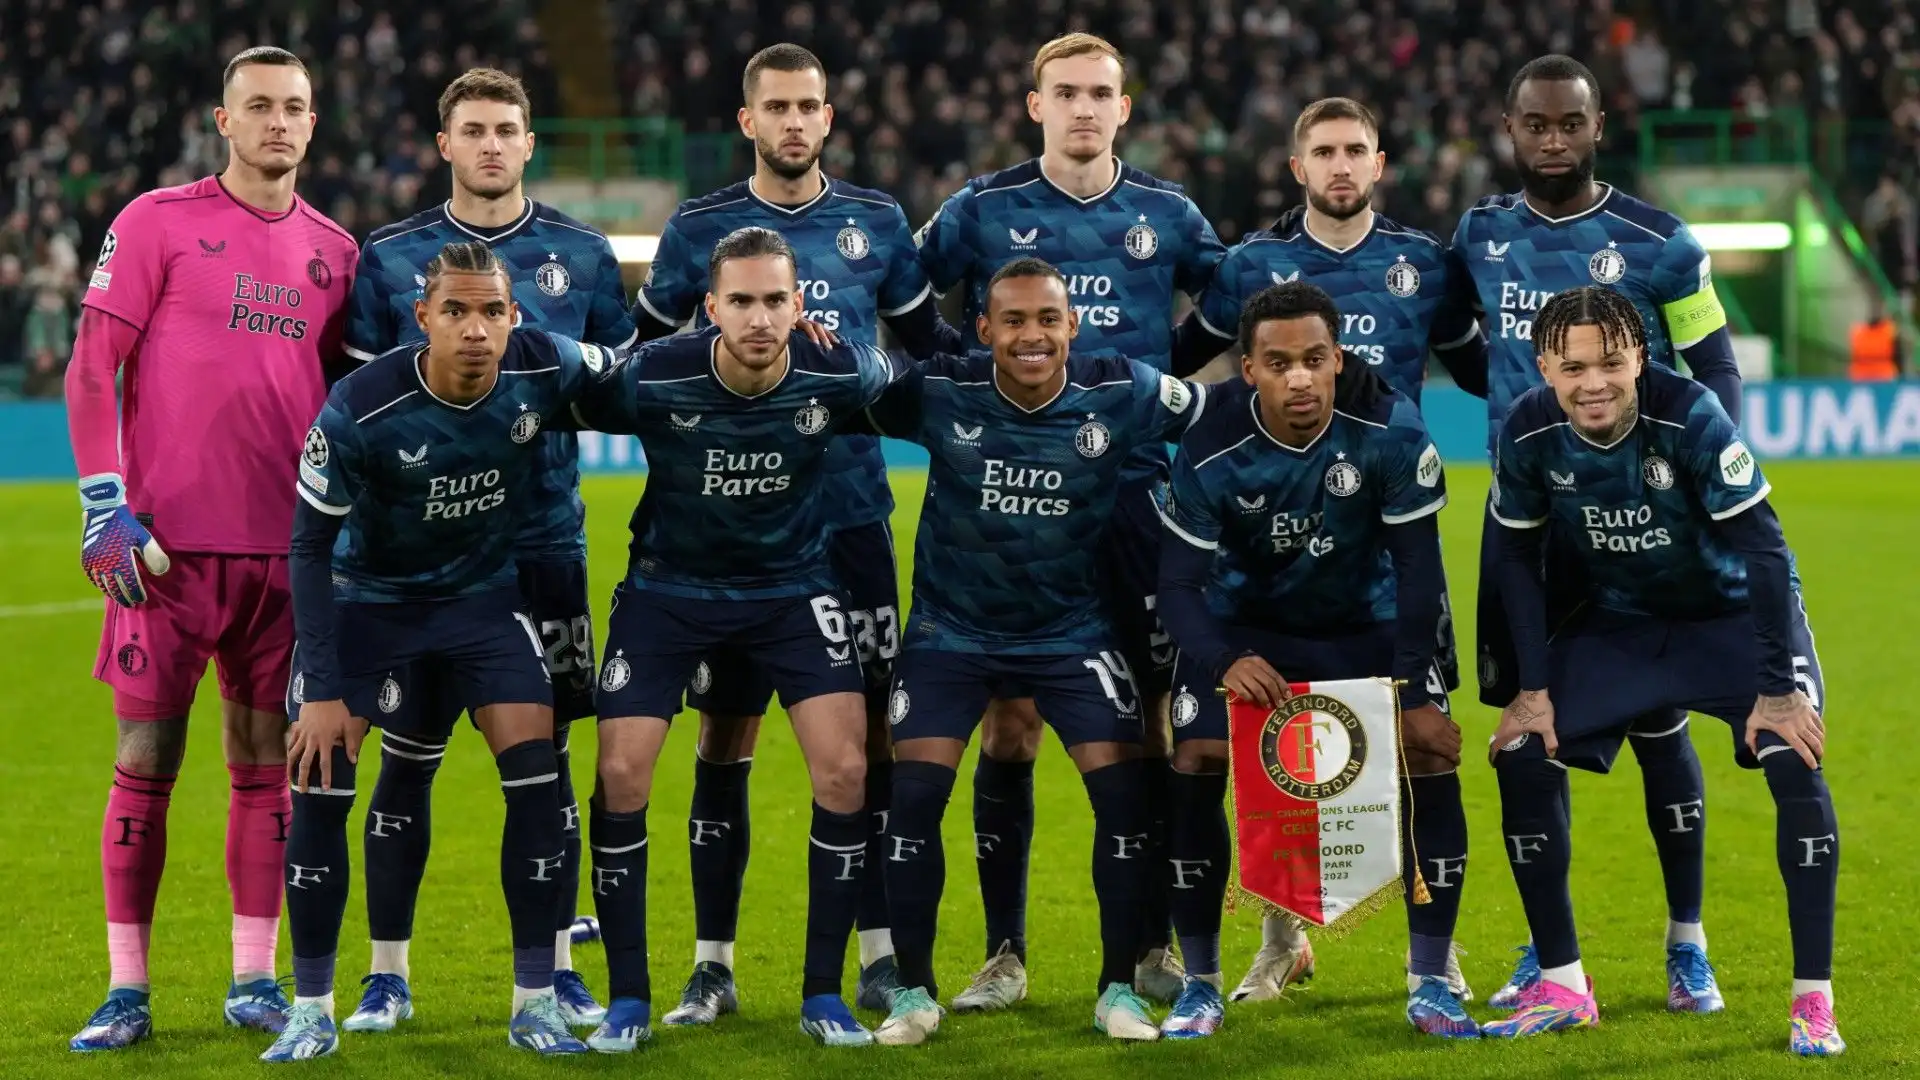 Le migliori squadre d'Europa osservano l'olandese del Feyenoord. Le foto